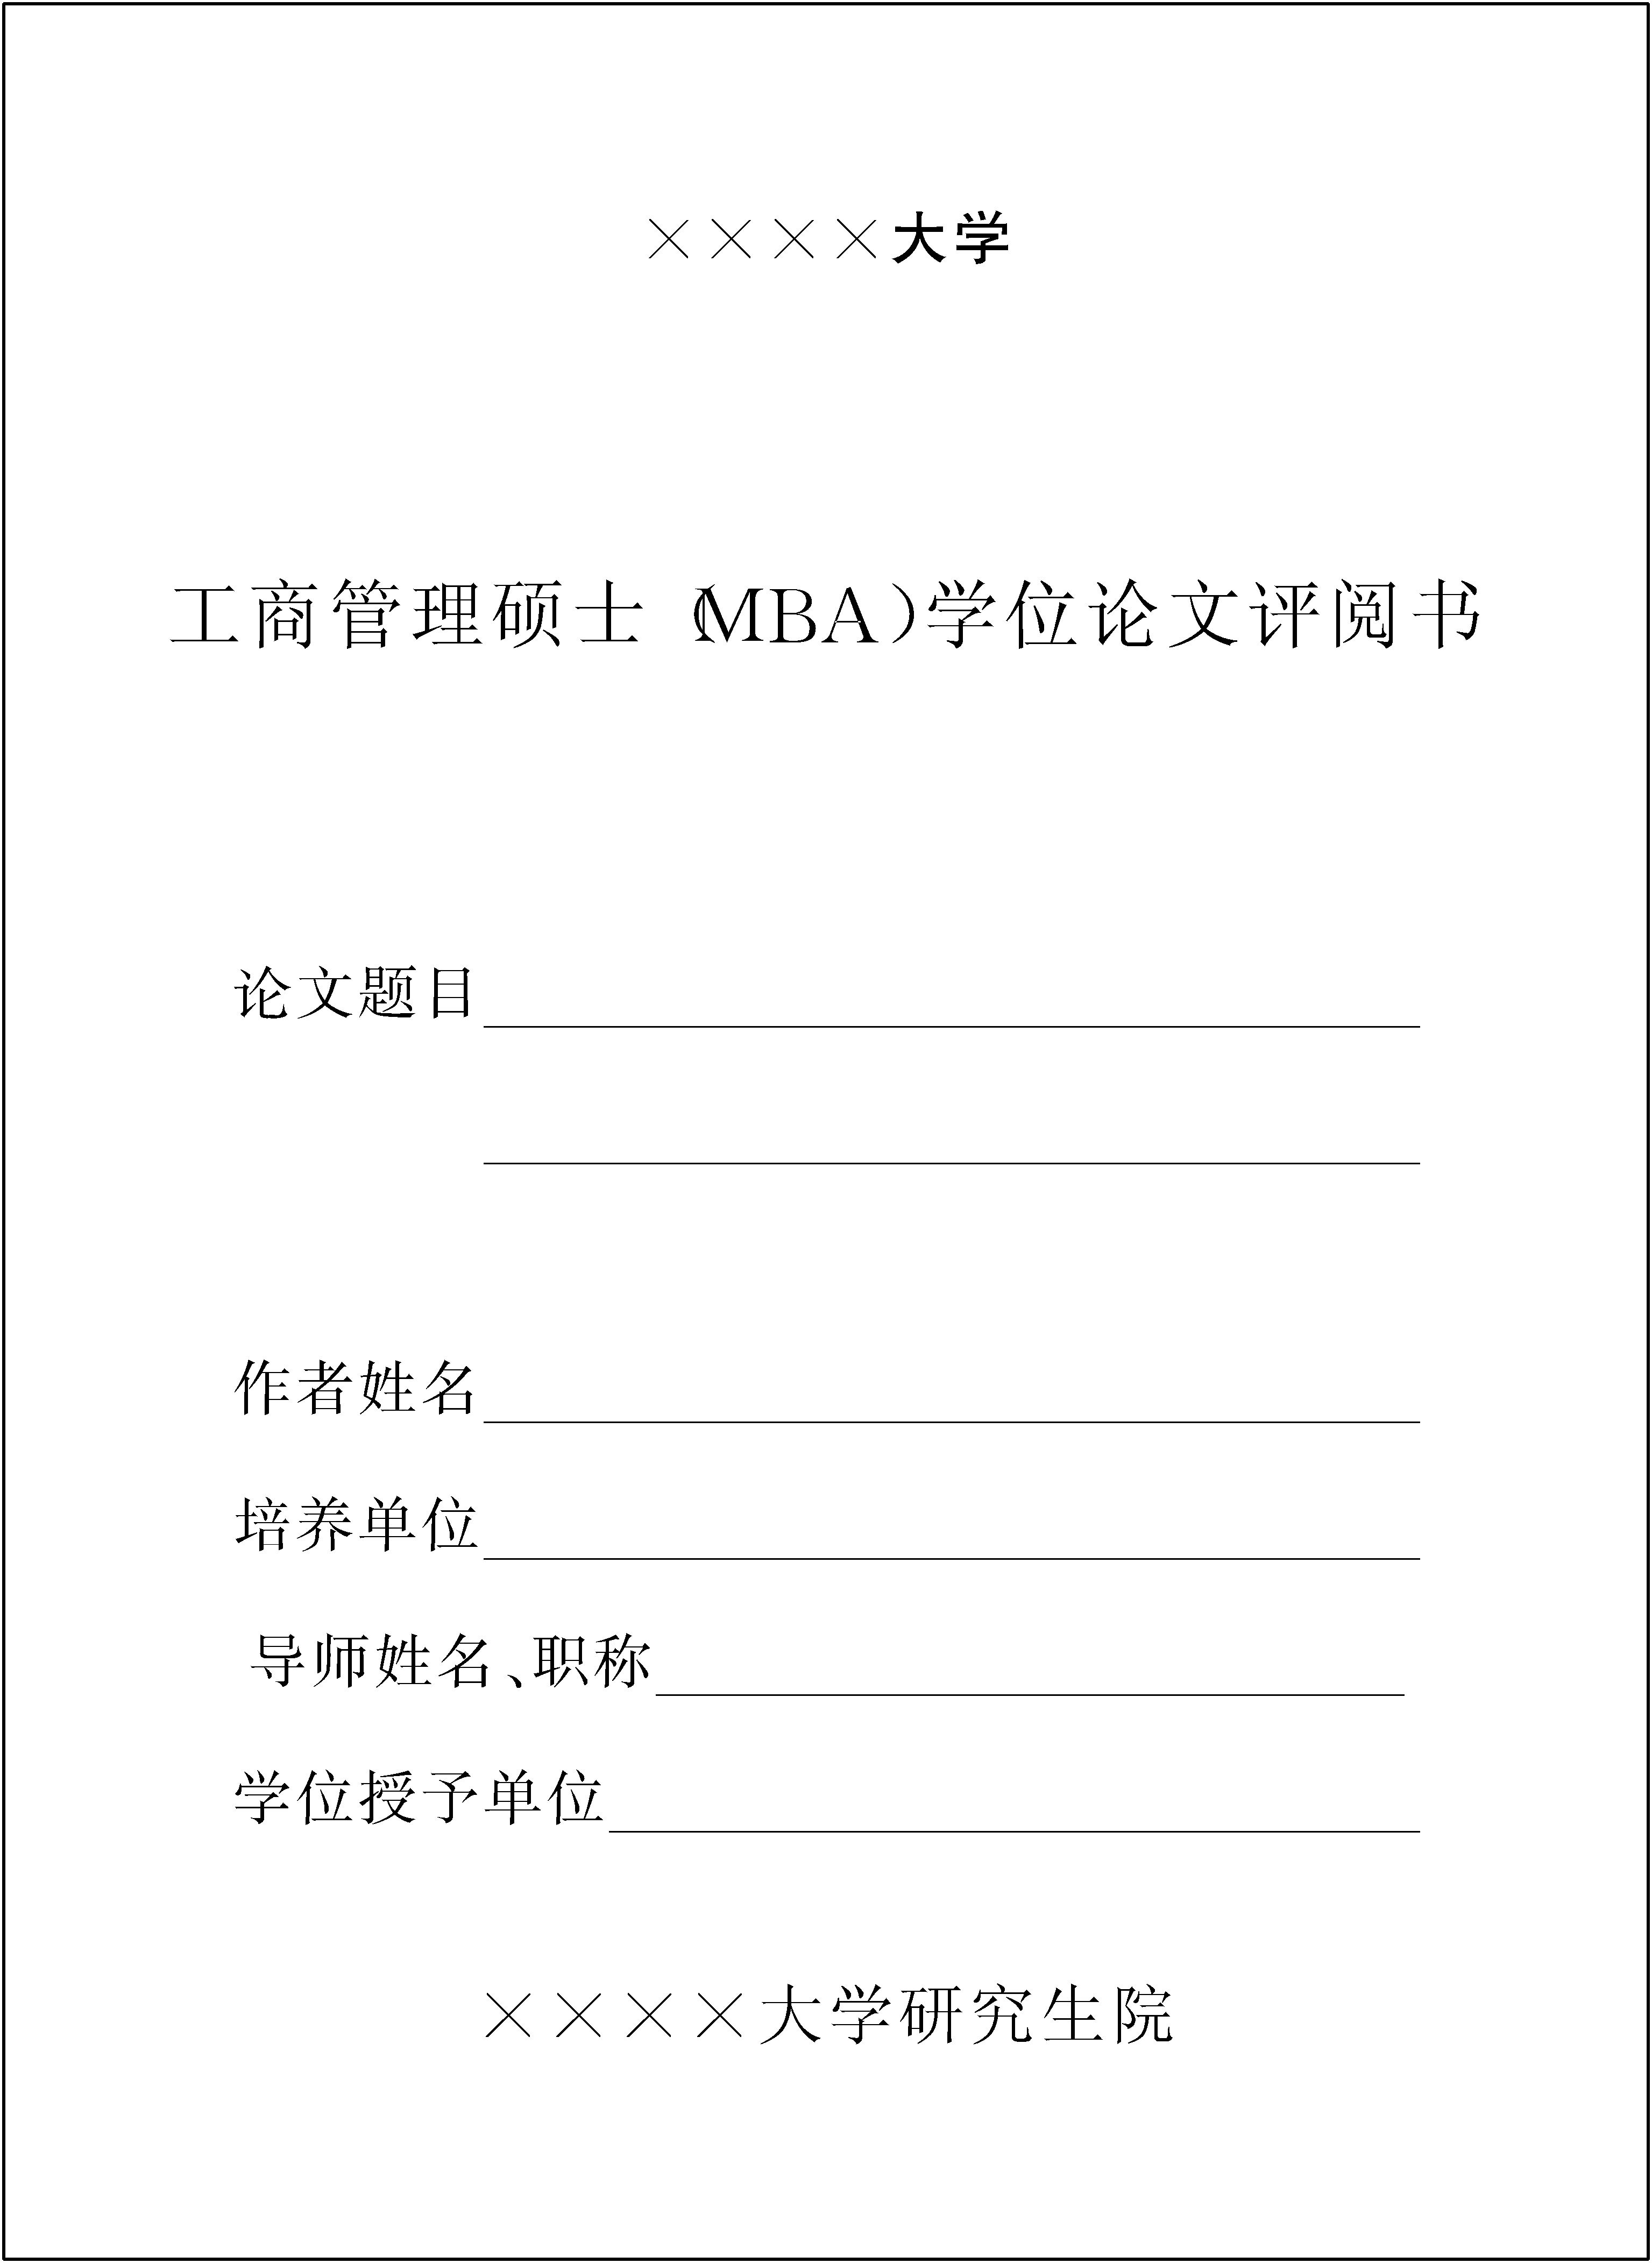 四、MBA学位论文的工作程序